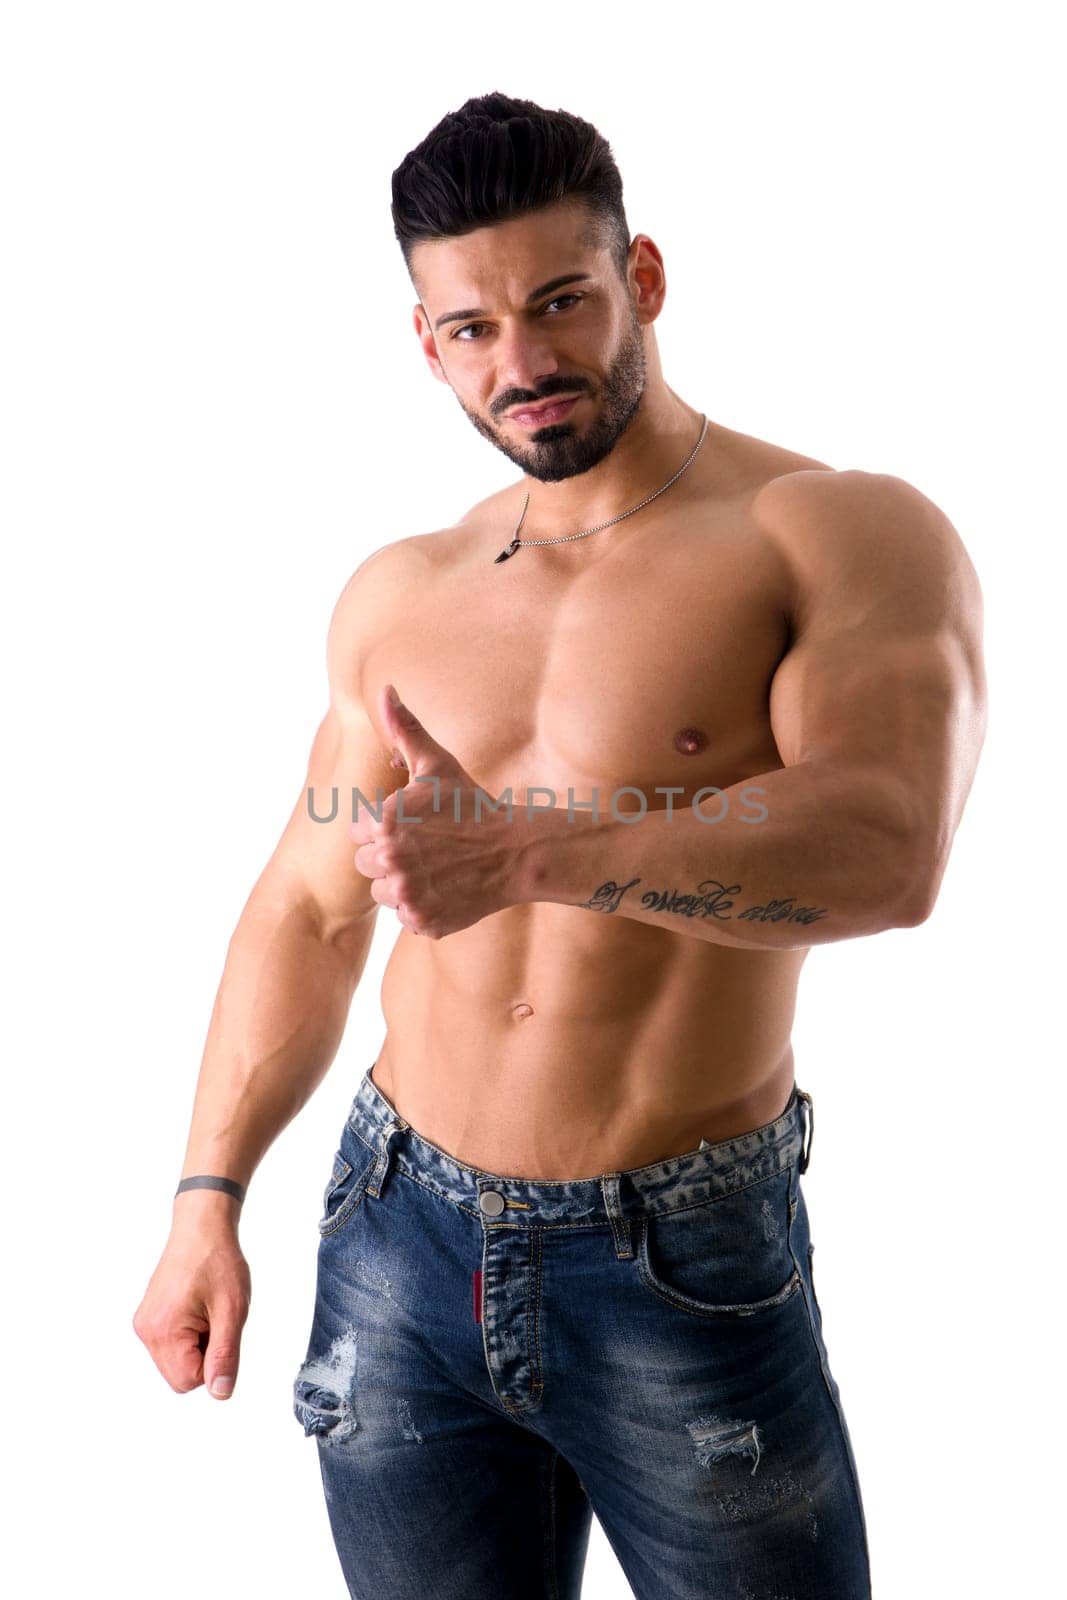 Shirtless Man Striking a Pose by artofphoto